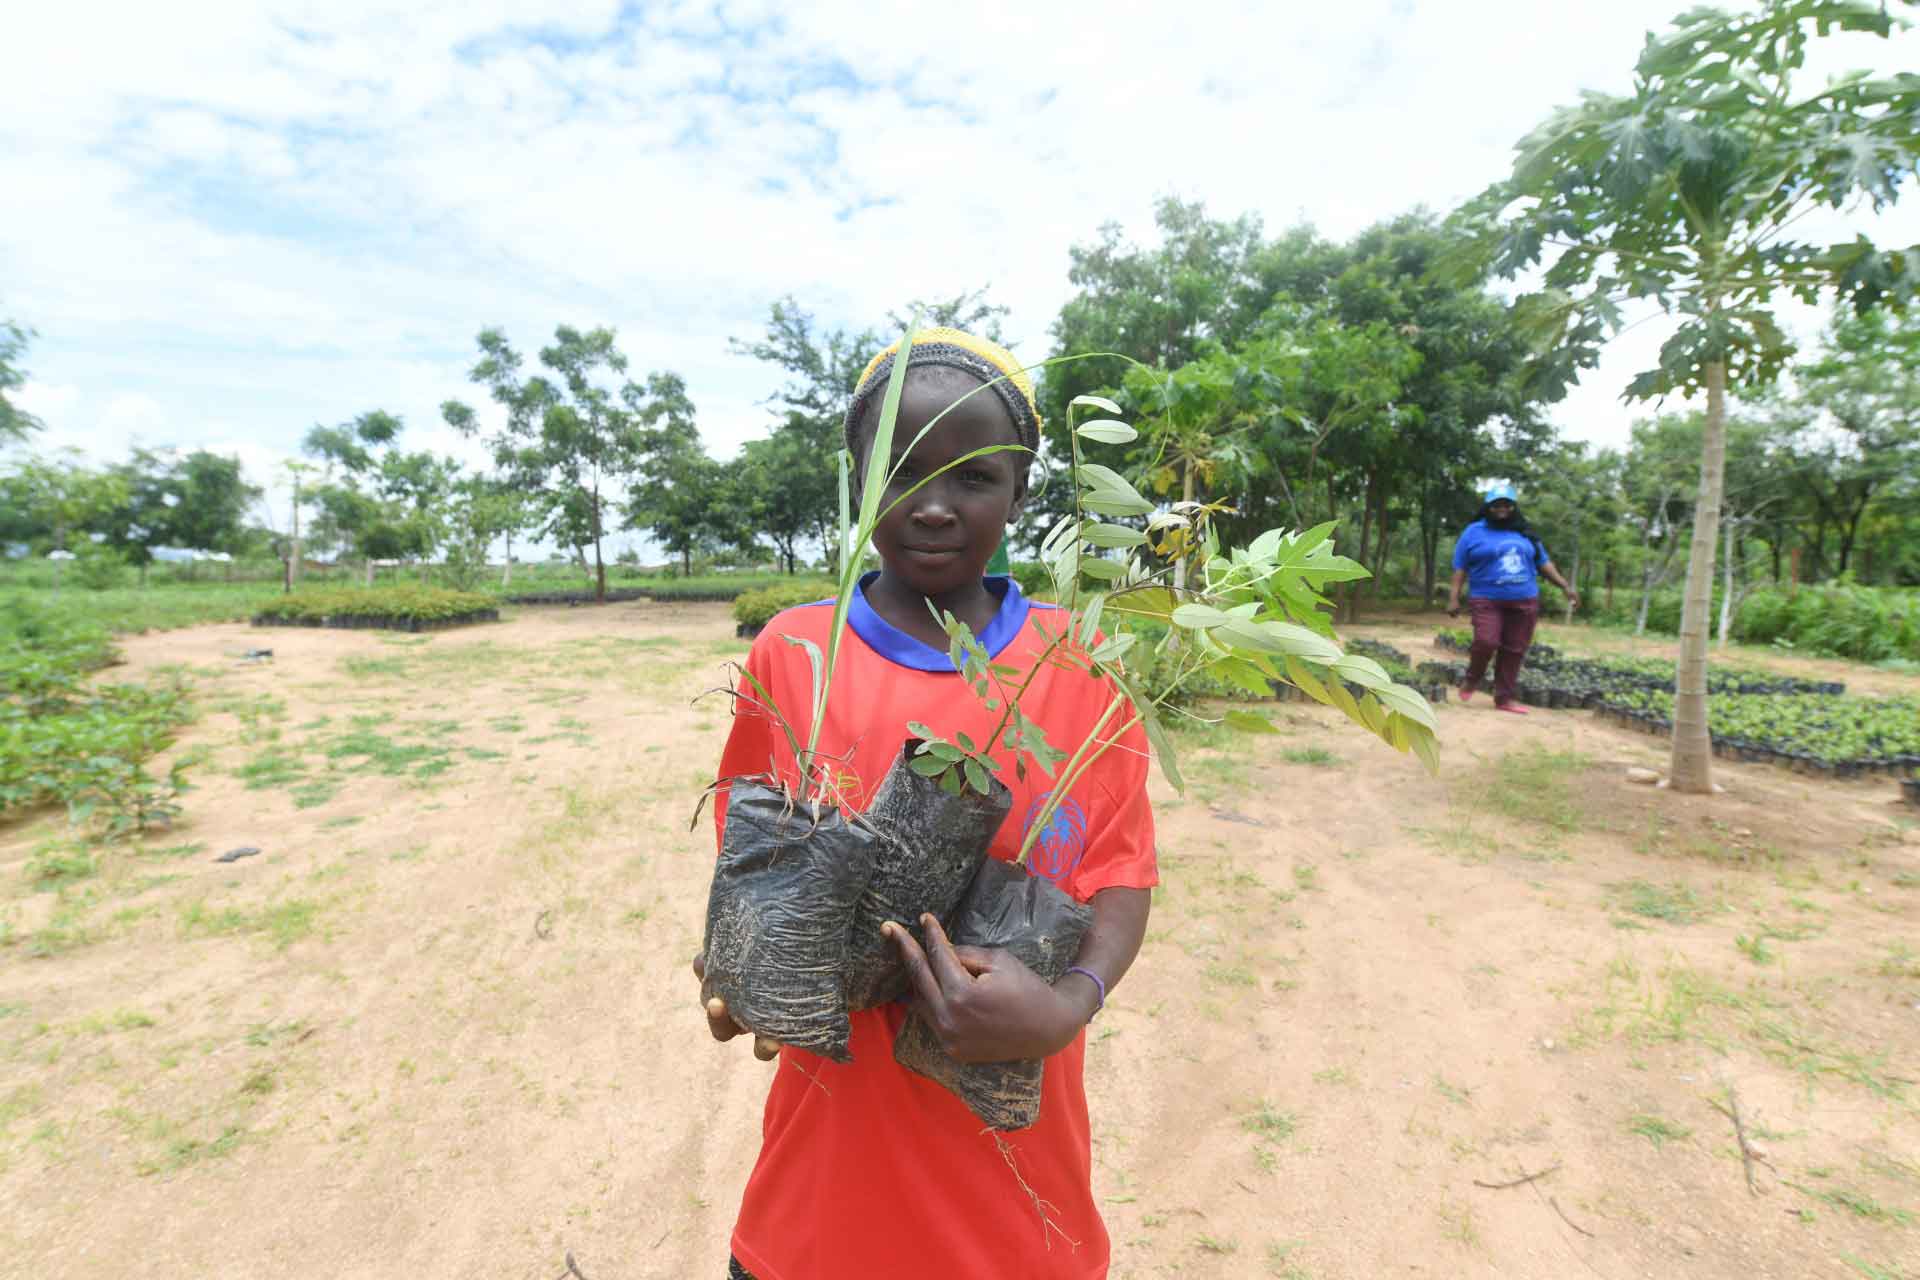 Ein junger Flüchtling kehrt nach Hause zurück, nachdem die Baumschule im Flüchtlingslager Minawao, Kamerun, Jungpflanzen verteilt hat. Das Projekt "Make Minawao green again" zielt darauf ab, die Entwaldung im Lager und den umliegenden Dörfern rückgängig zu machen. 